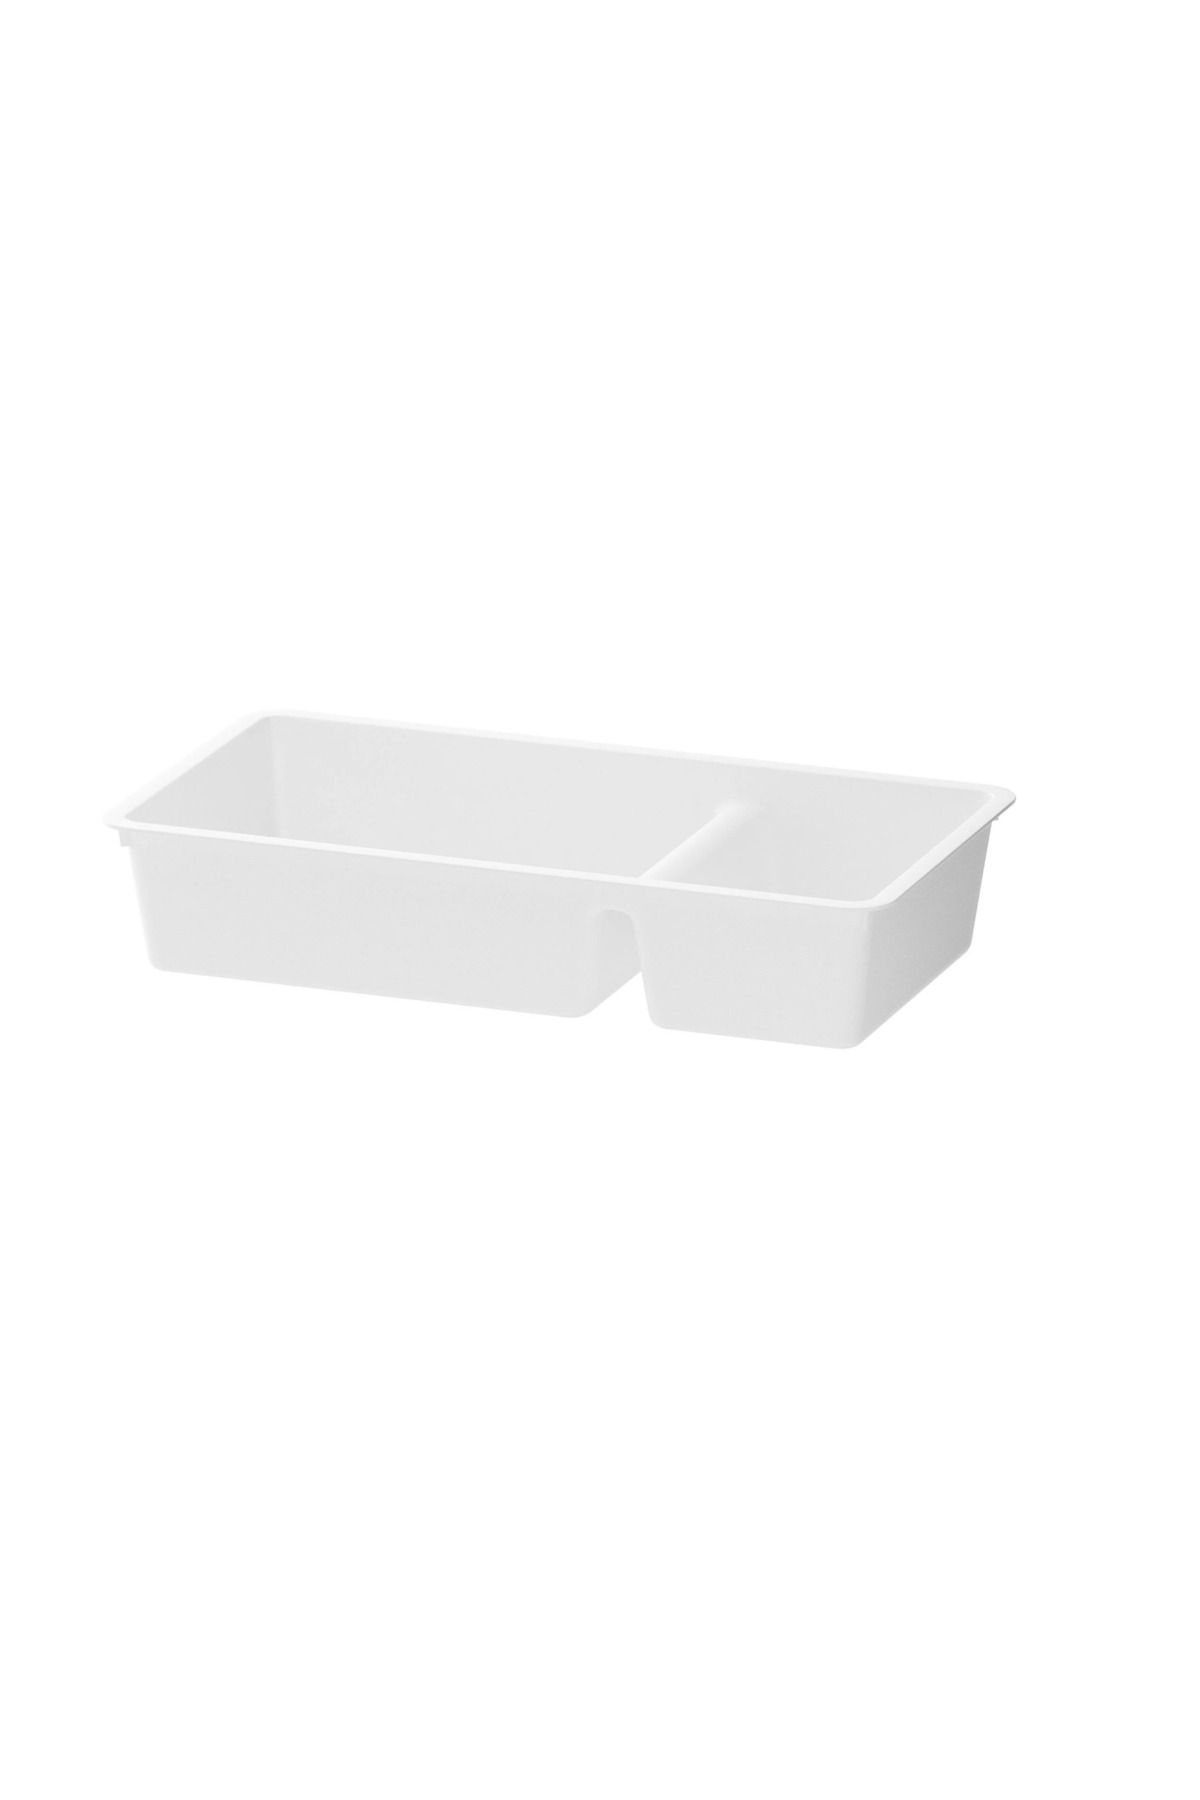 IKEA BILLINGEN bölmeli kutu, beyaz, 33x17 cm